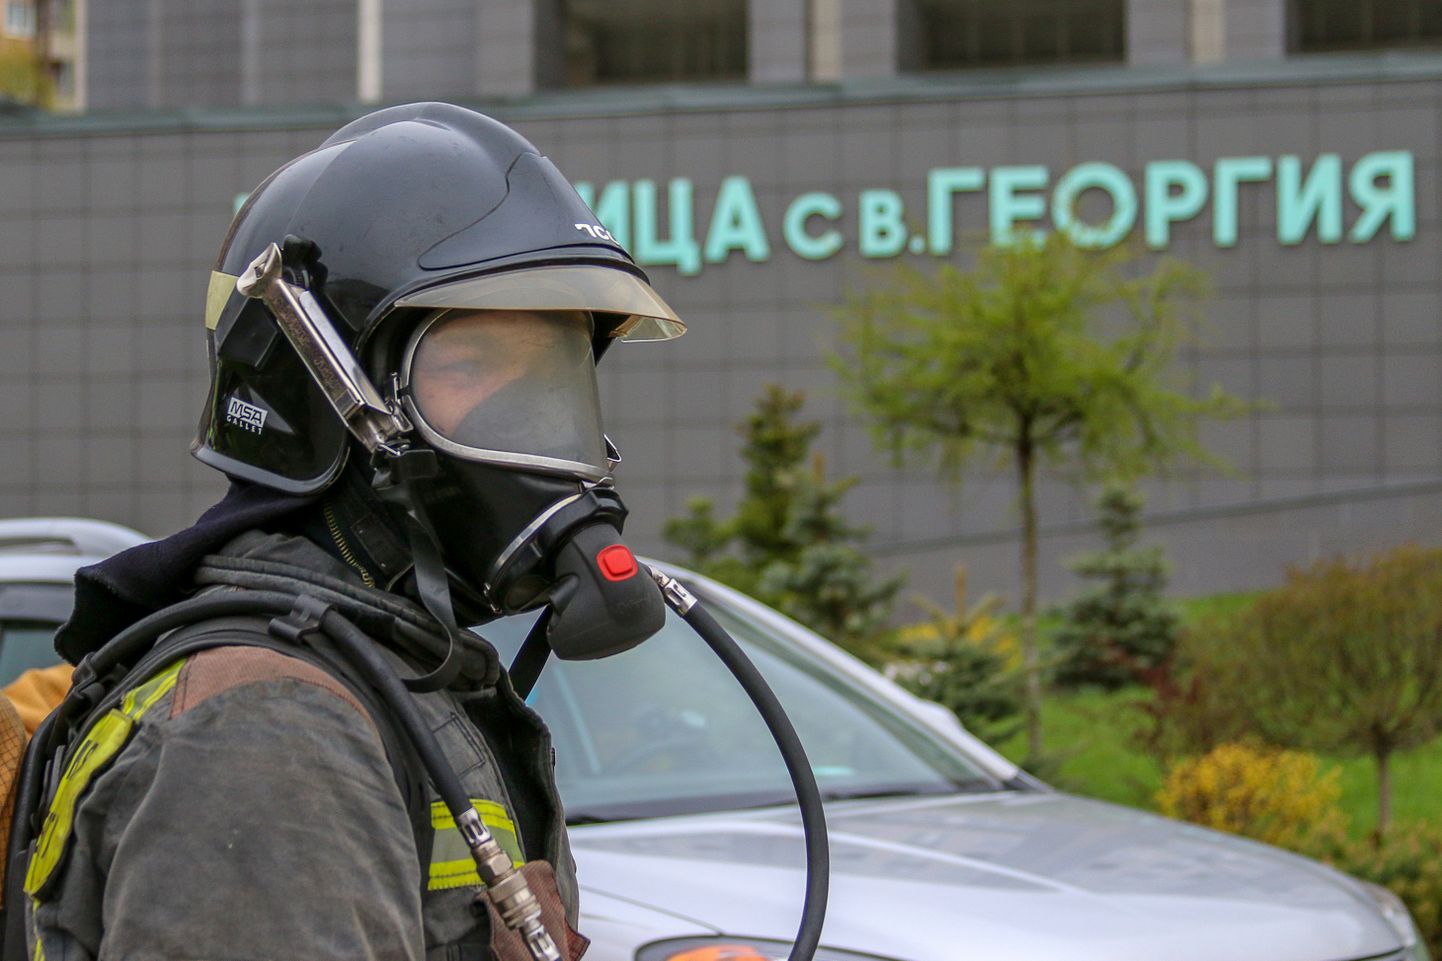 Tuletõrjuja Peterburi Püha Jüri haigla ees.